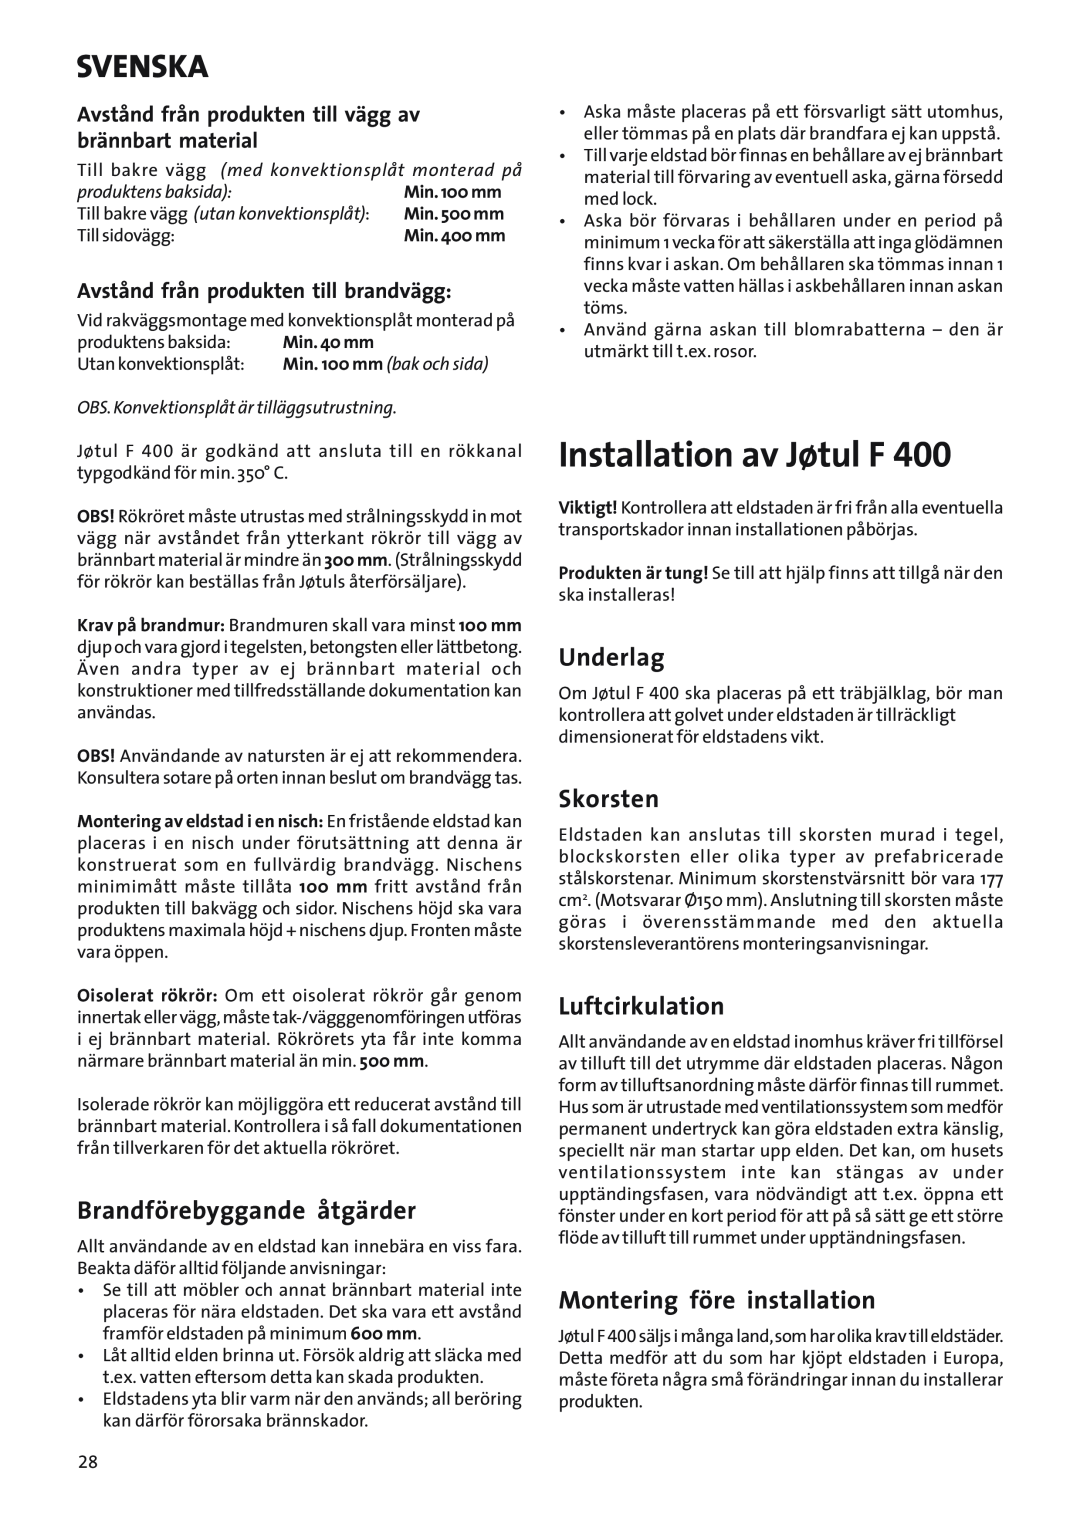 Jotul Woodstove F 400 Installation av Jøtul F, Brandförebyggande åtgärder, Underlag, Skorsten, Luftcirkulation, Svenska 